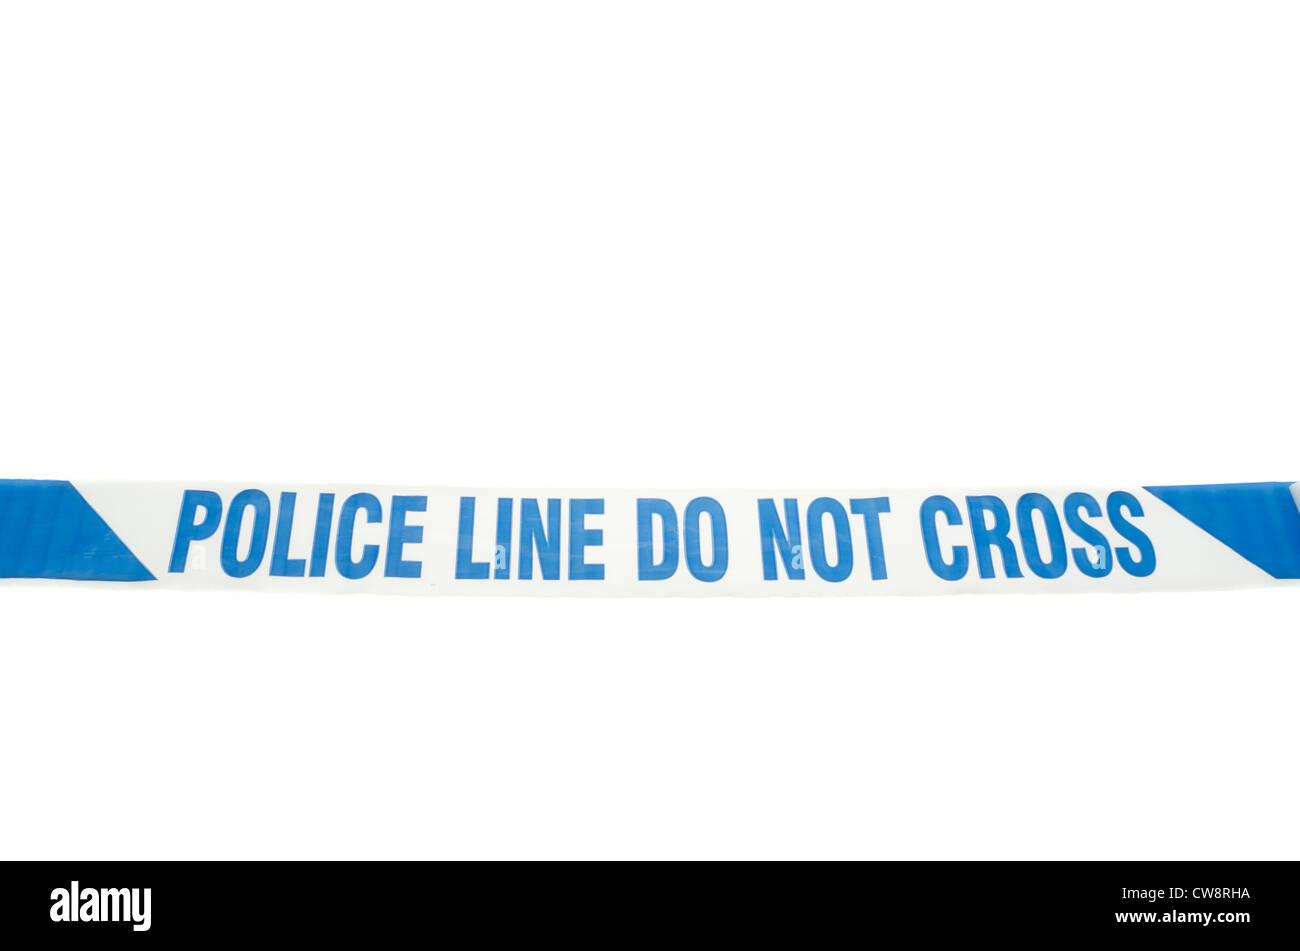 "Polizeiabsperrung kreuzen nicht" Band erstreckte sich über einen weißen Hintergrund. Stockfoto